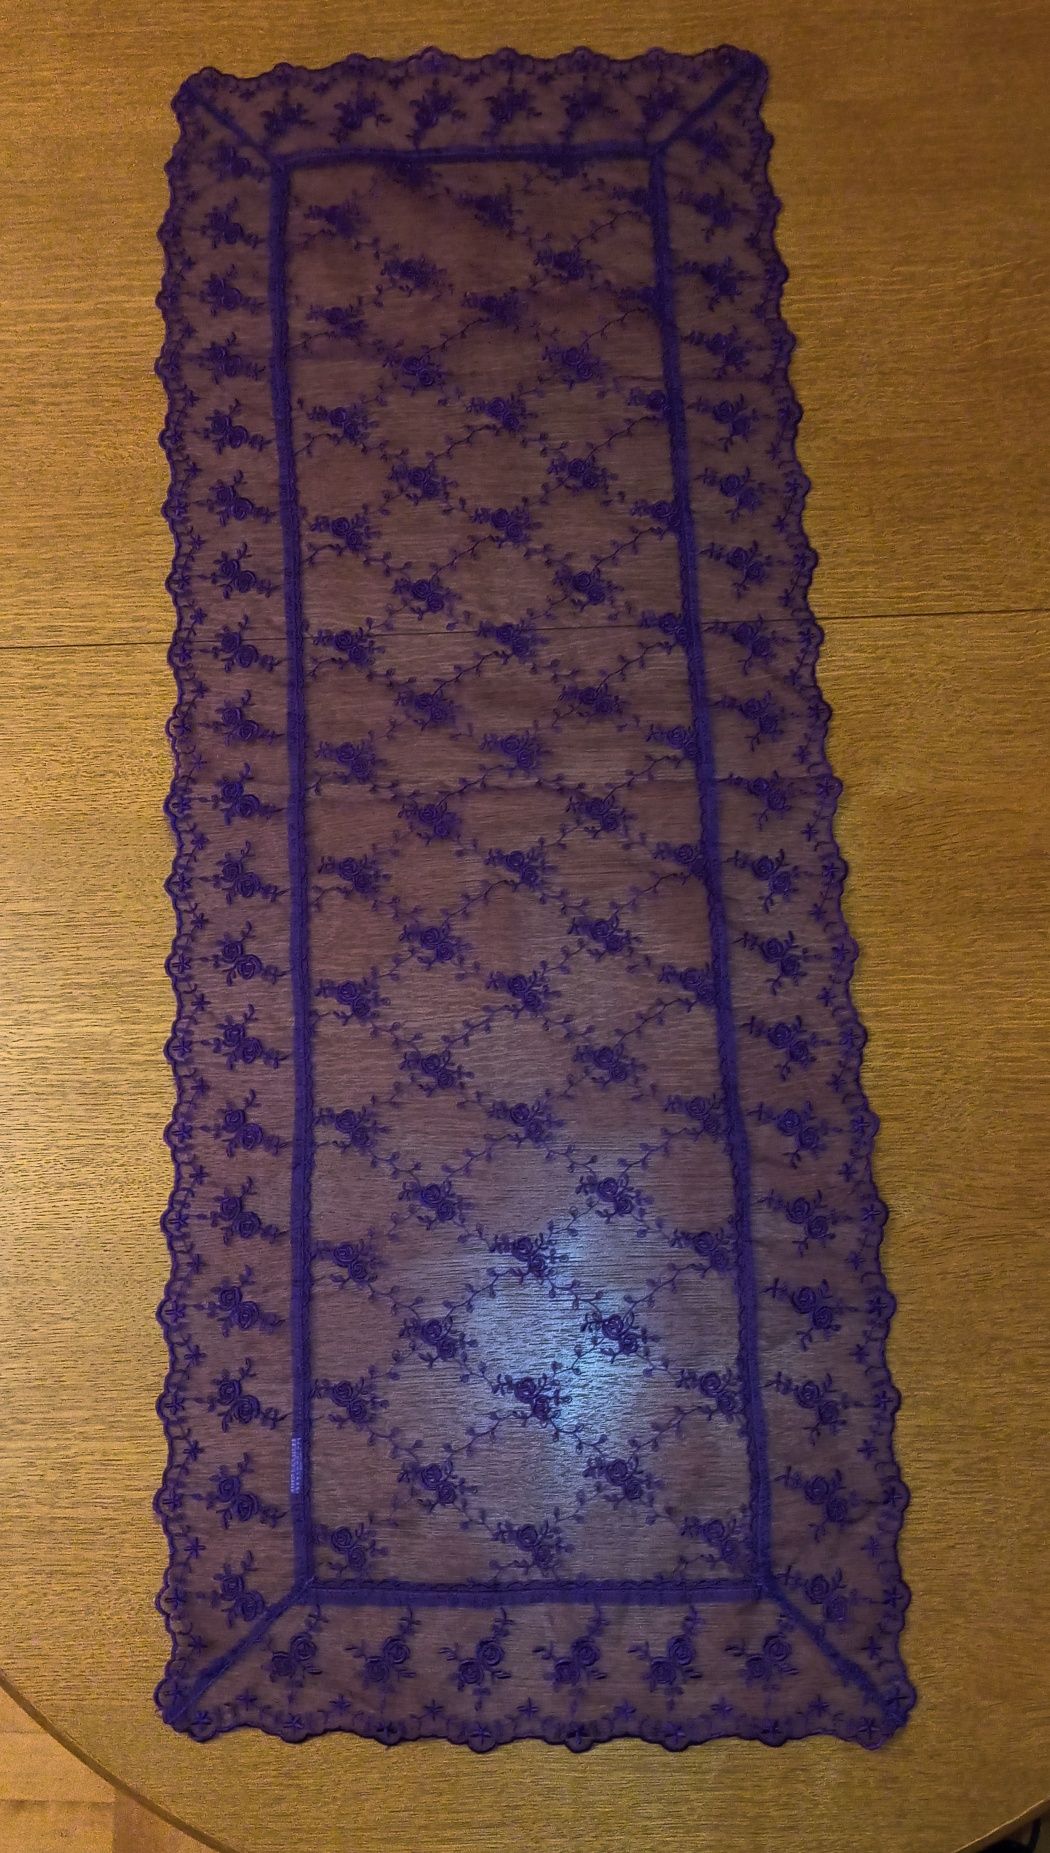 Fioletowy koronkowy bieżnik, wymiary: 109x42 cm